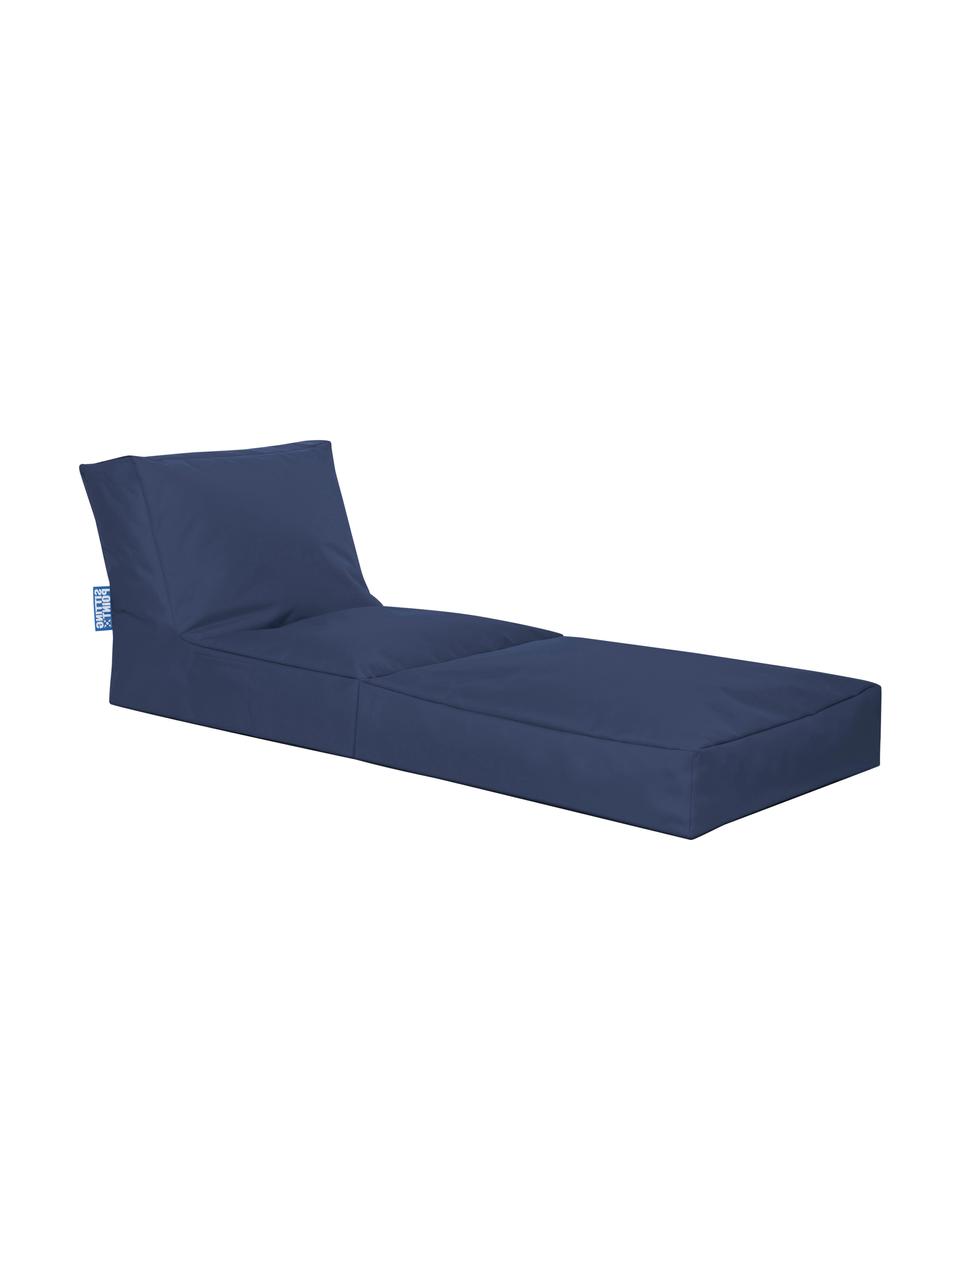 Poltrona letto da giardino reclinabile Pop Up, Rivestimento: 100% poliestere All'inter, Blue jeans, Larg. 70 x Prof. 90 cm